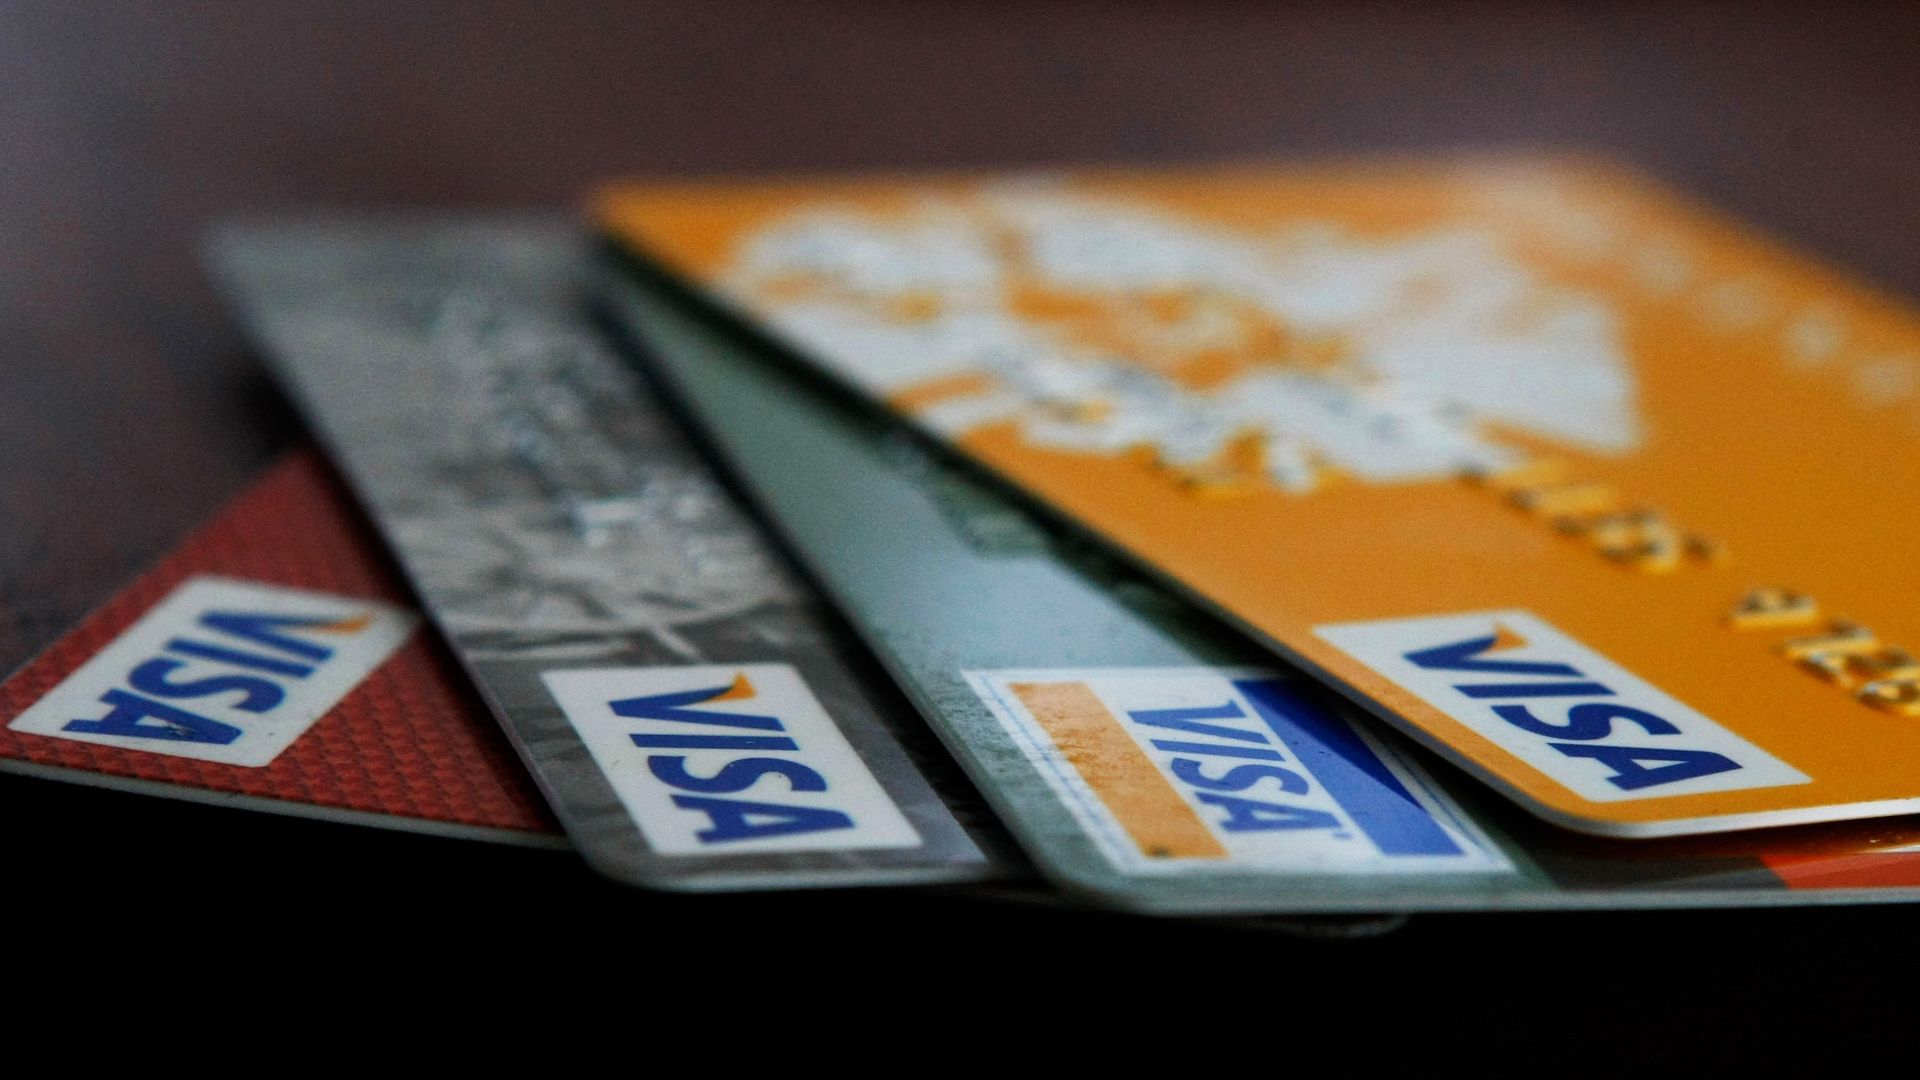 Visa credit cards are arranged on a desk